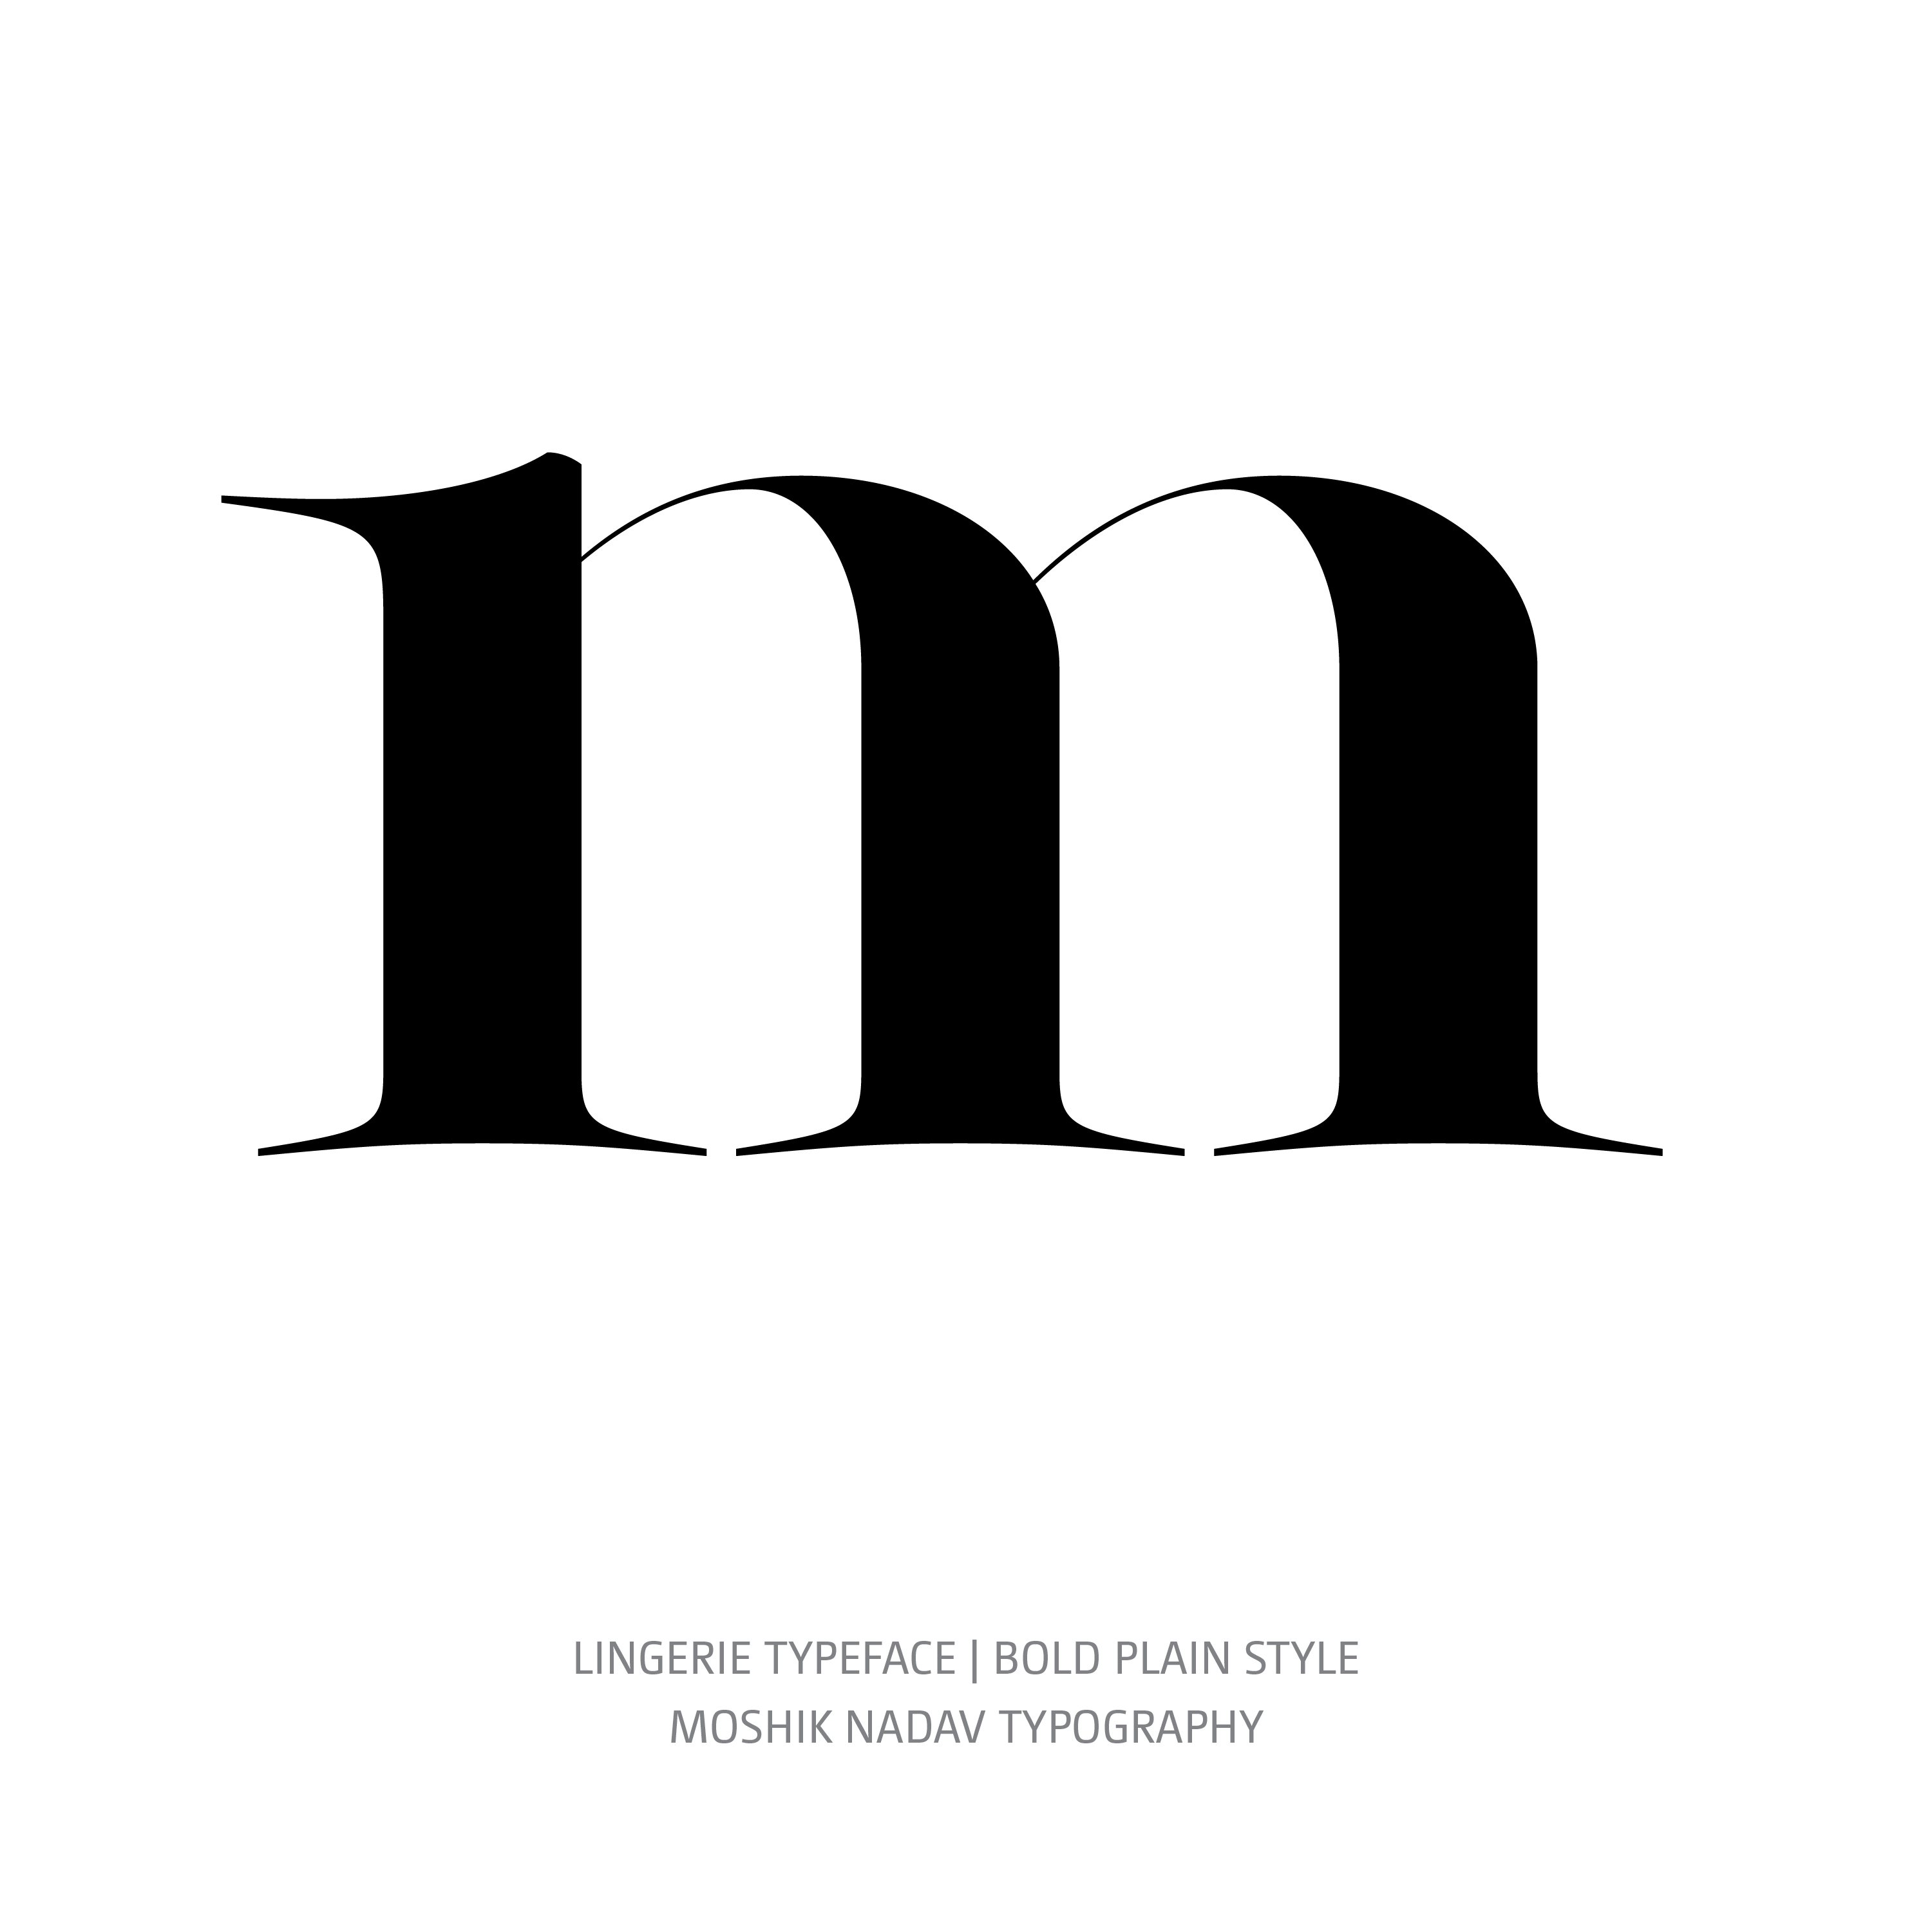 Lingerie Typeface Bold Plain m